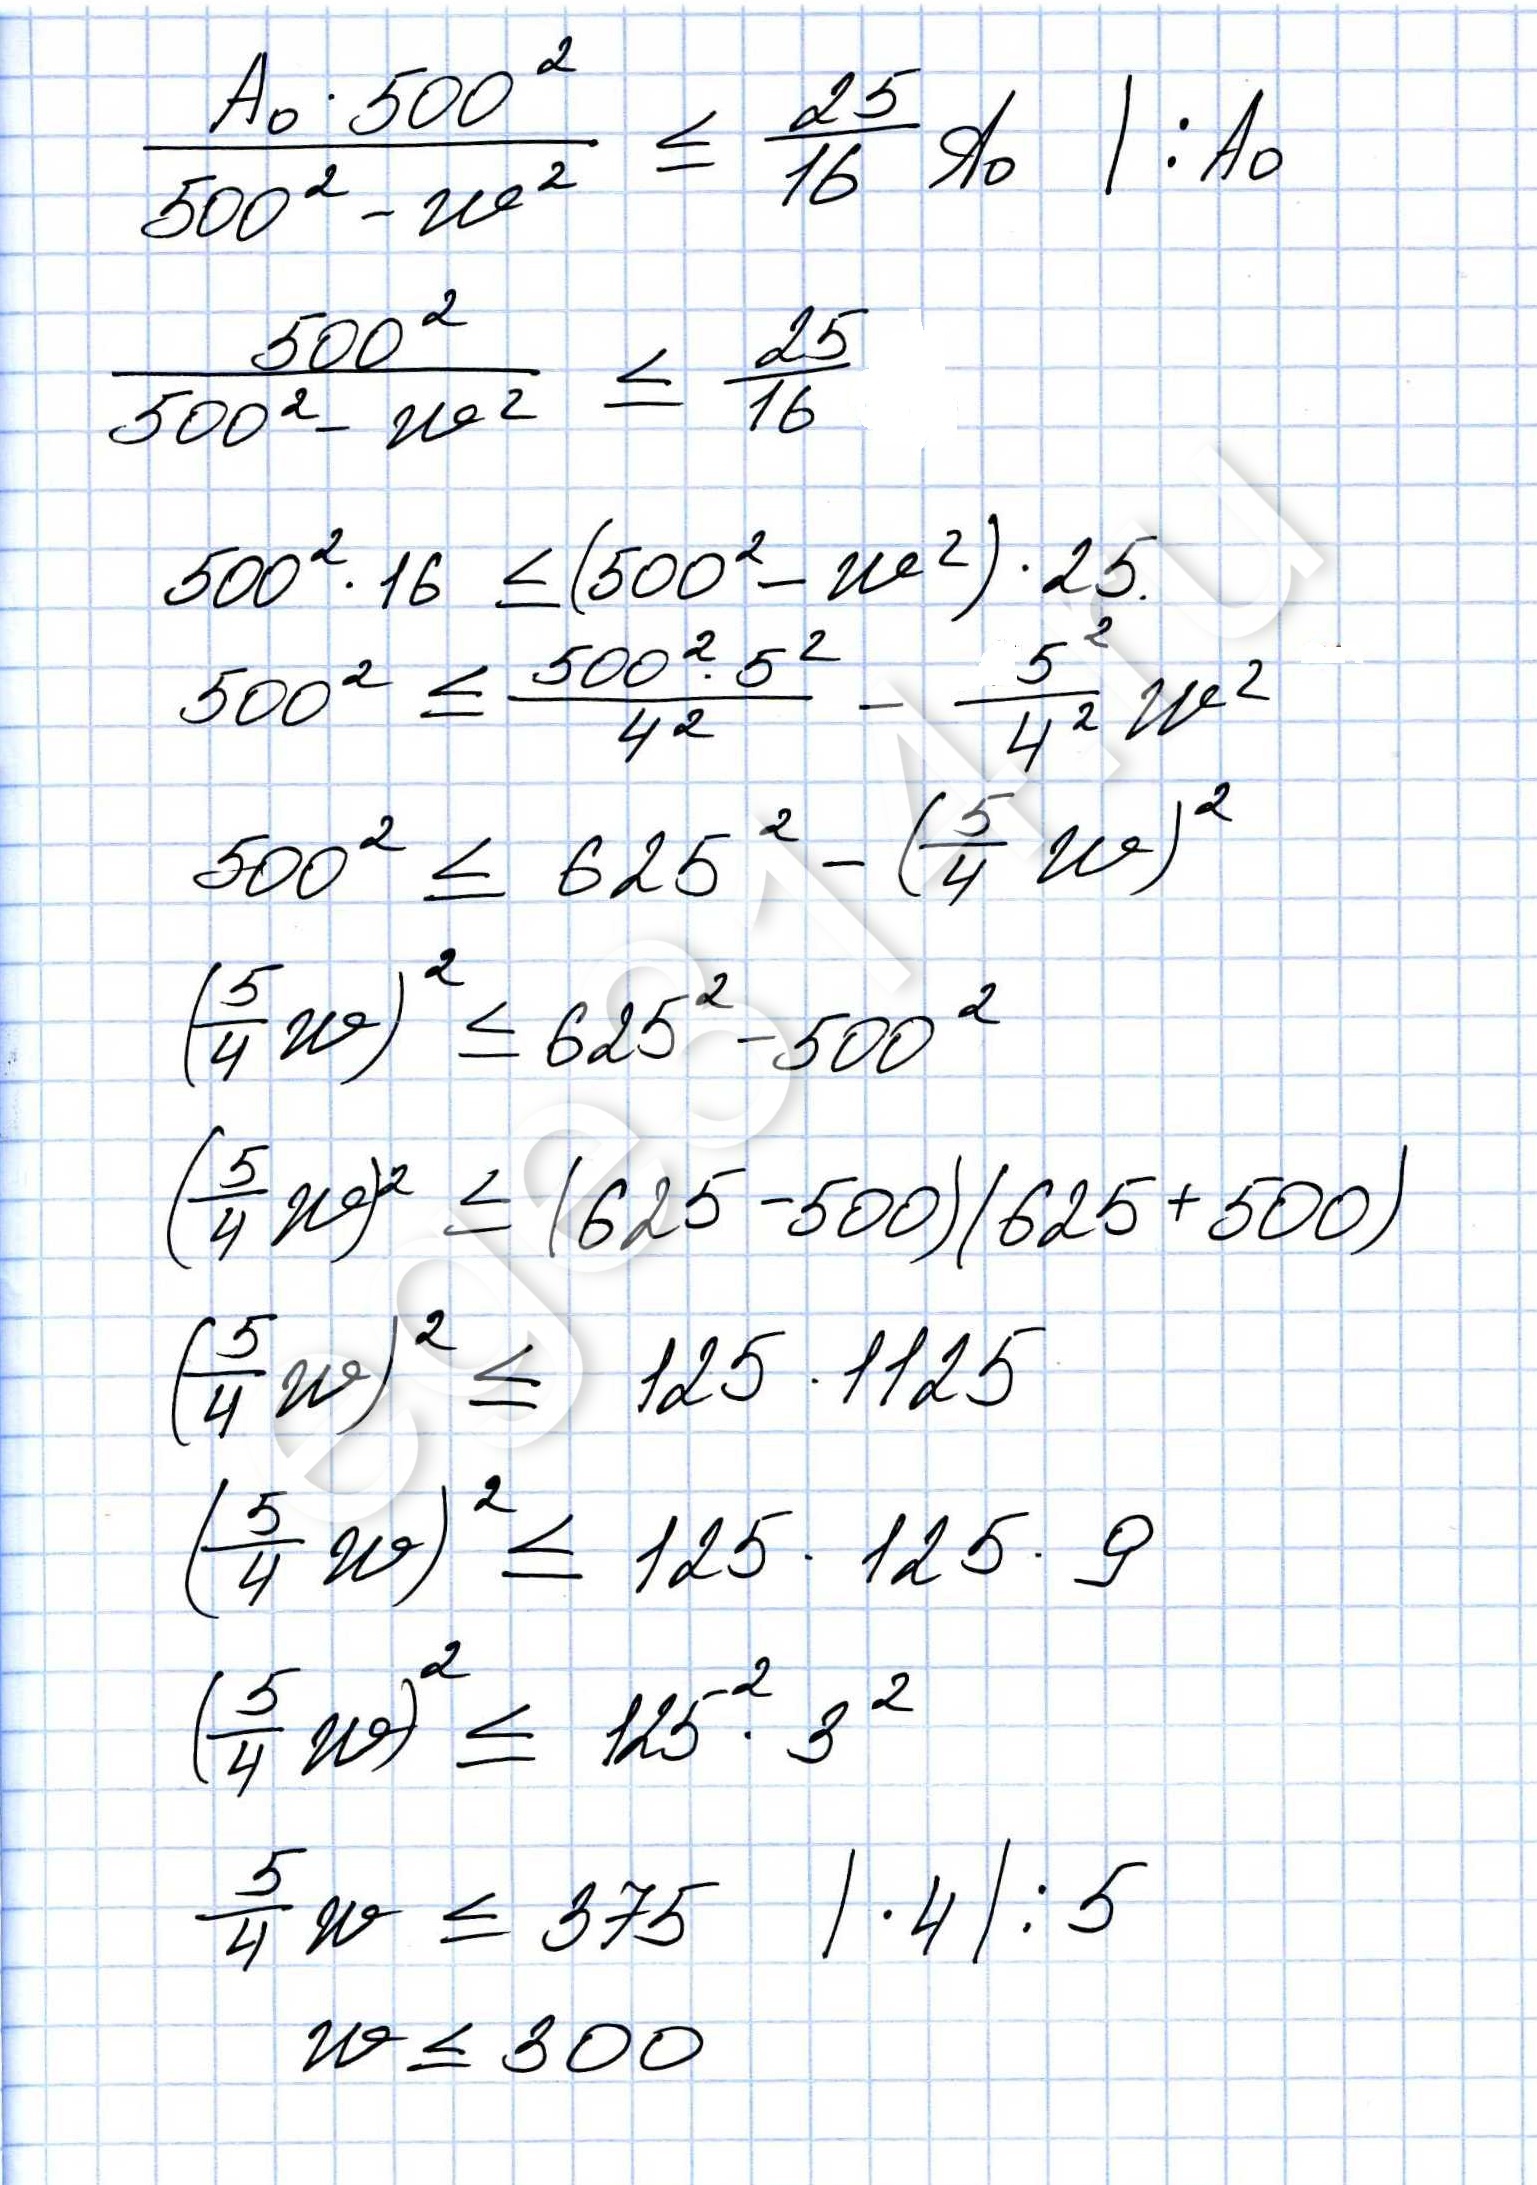 Решение №556 Амплитуда колебаний маятника зависит от частоты вынуждающей силы и определяется по формуле...